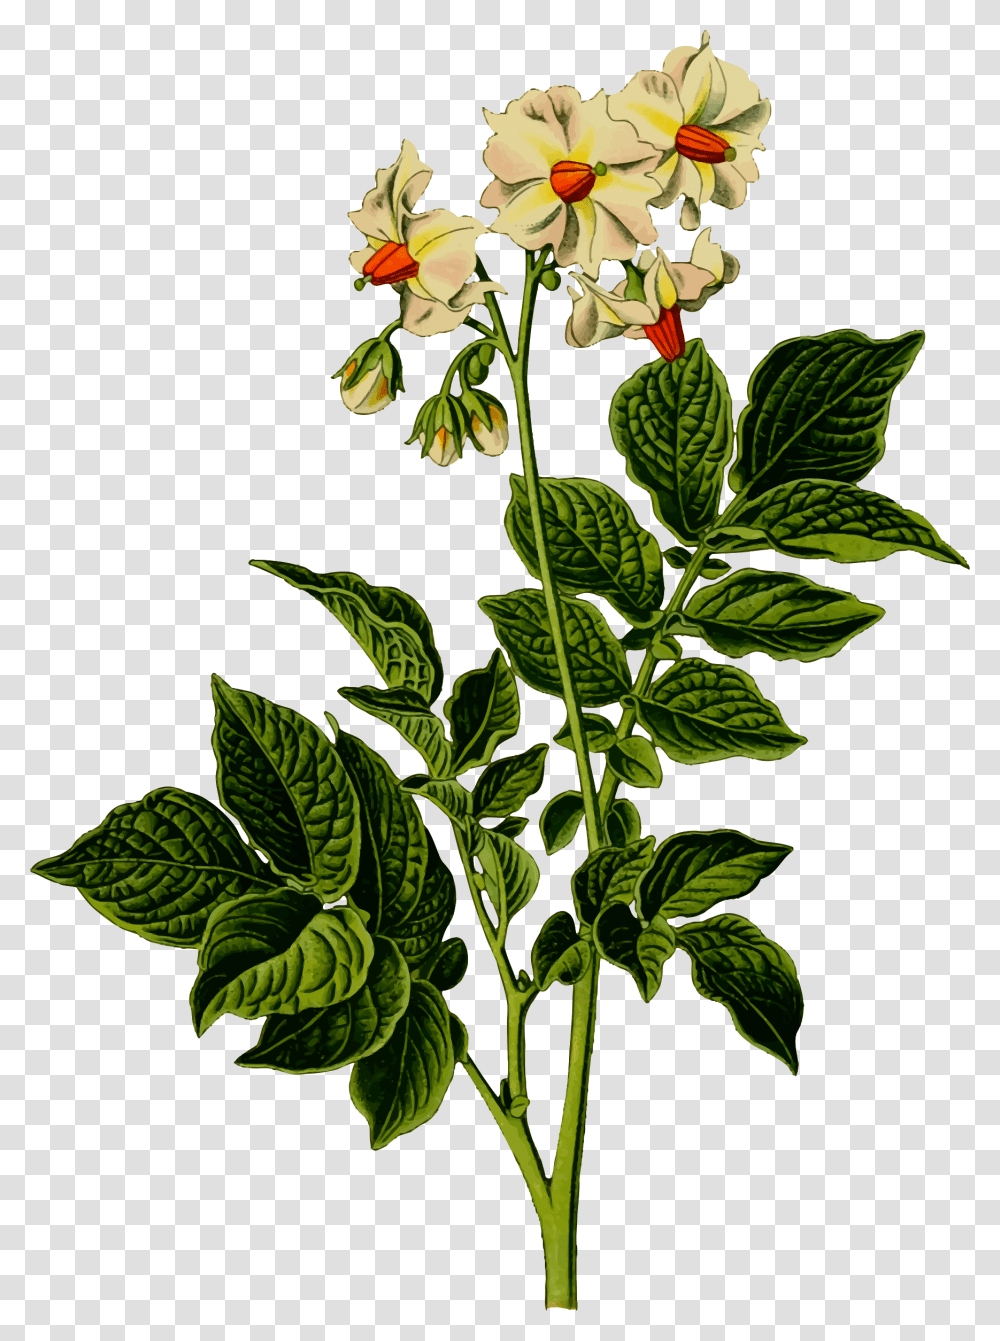 Potato Plant Clip Arts Potato Plant With Flowers, Acanthaceae, Blossom, Leaf, Annonaceae Transparent Png